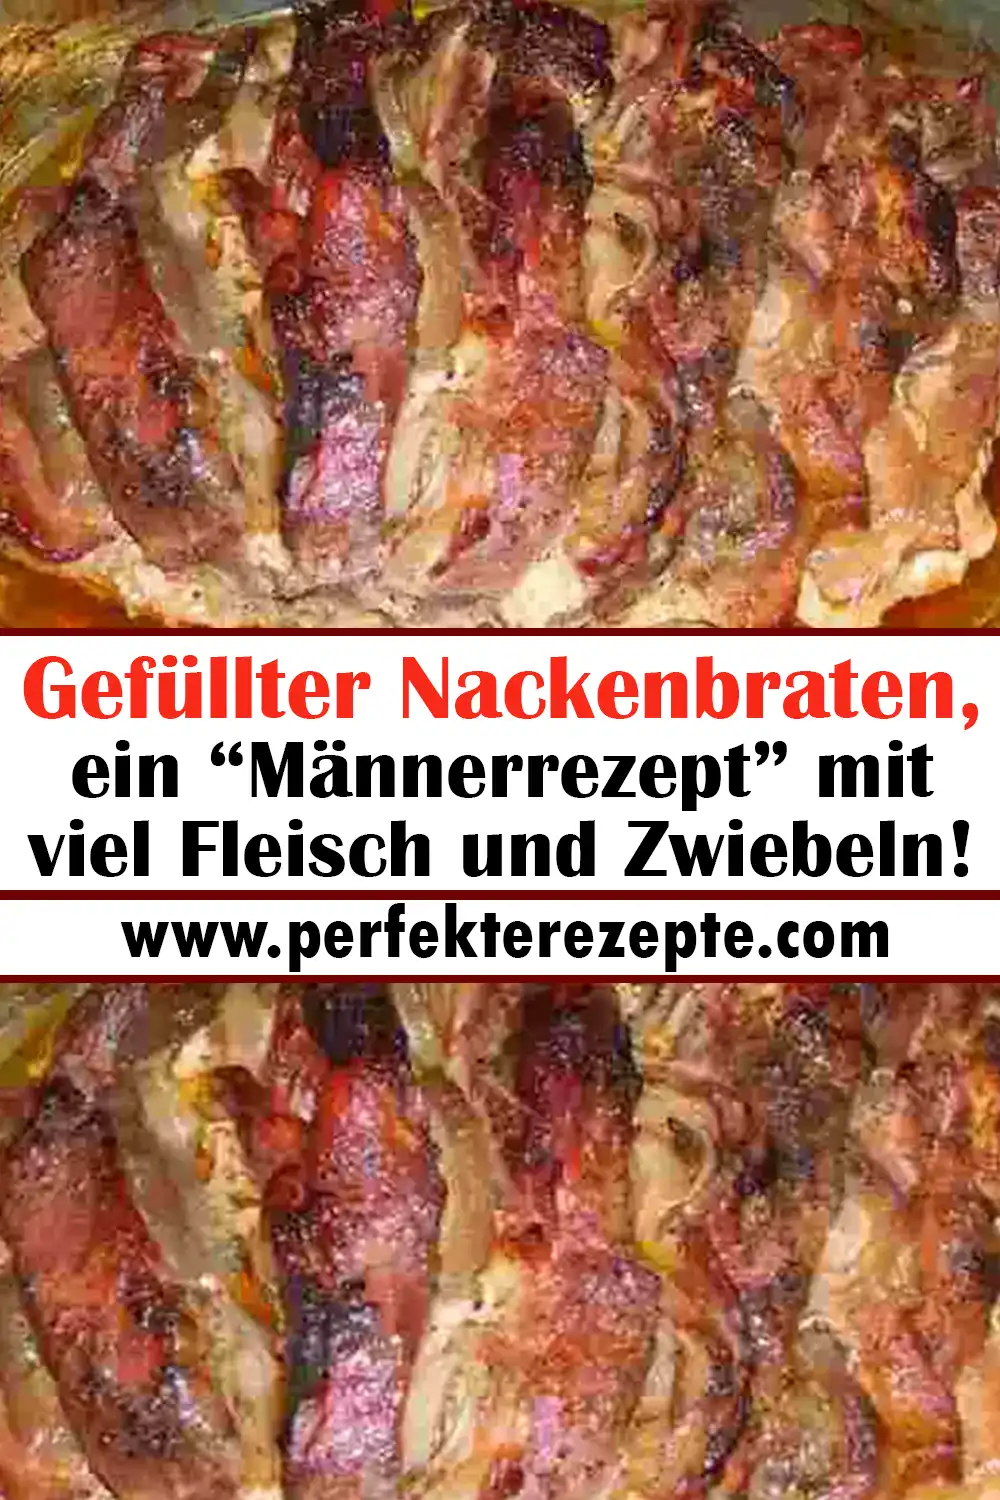 Gefüllter Nackenbraten Rezept, ein “Männerrezept” mit viel Fleisch und Zwiebeln!